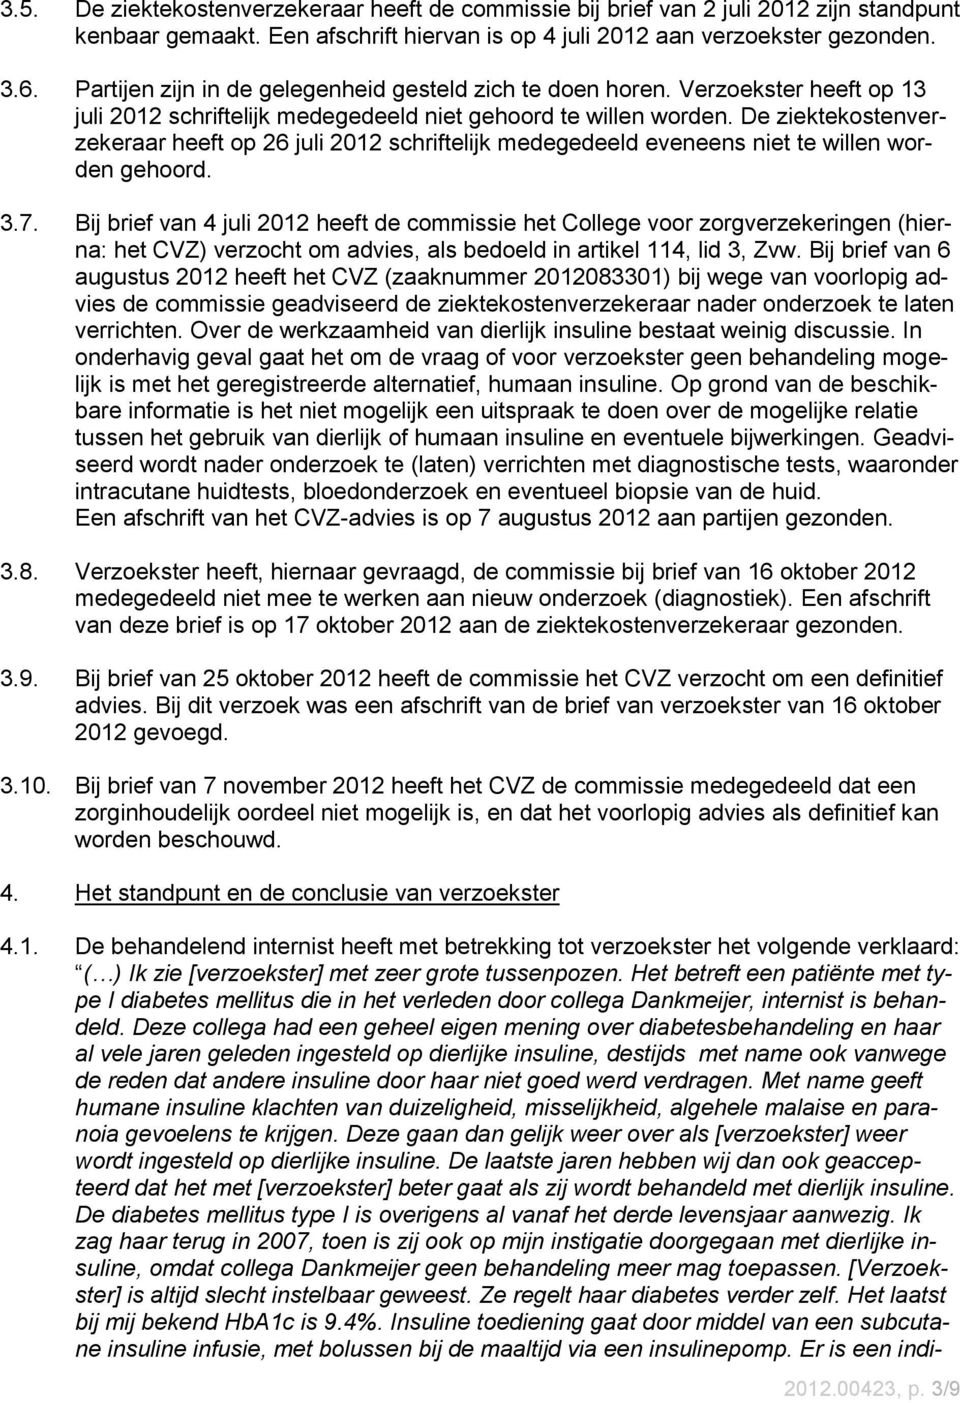 De ziektekostenverzekeraar heeft op 26 juli 2012 schriftelijk medegedeeld eveneens niet te willen worden gehoord. 3.7.